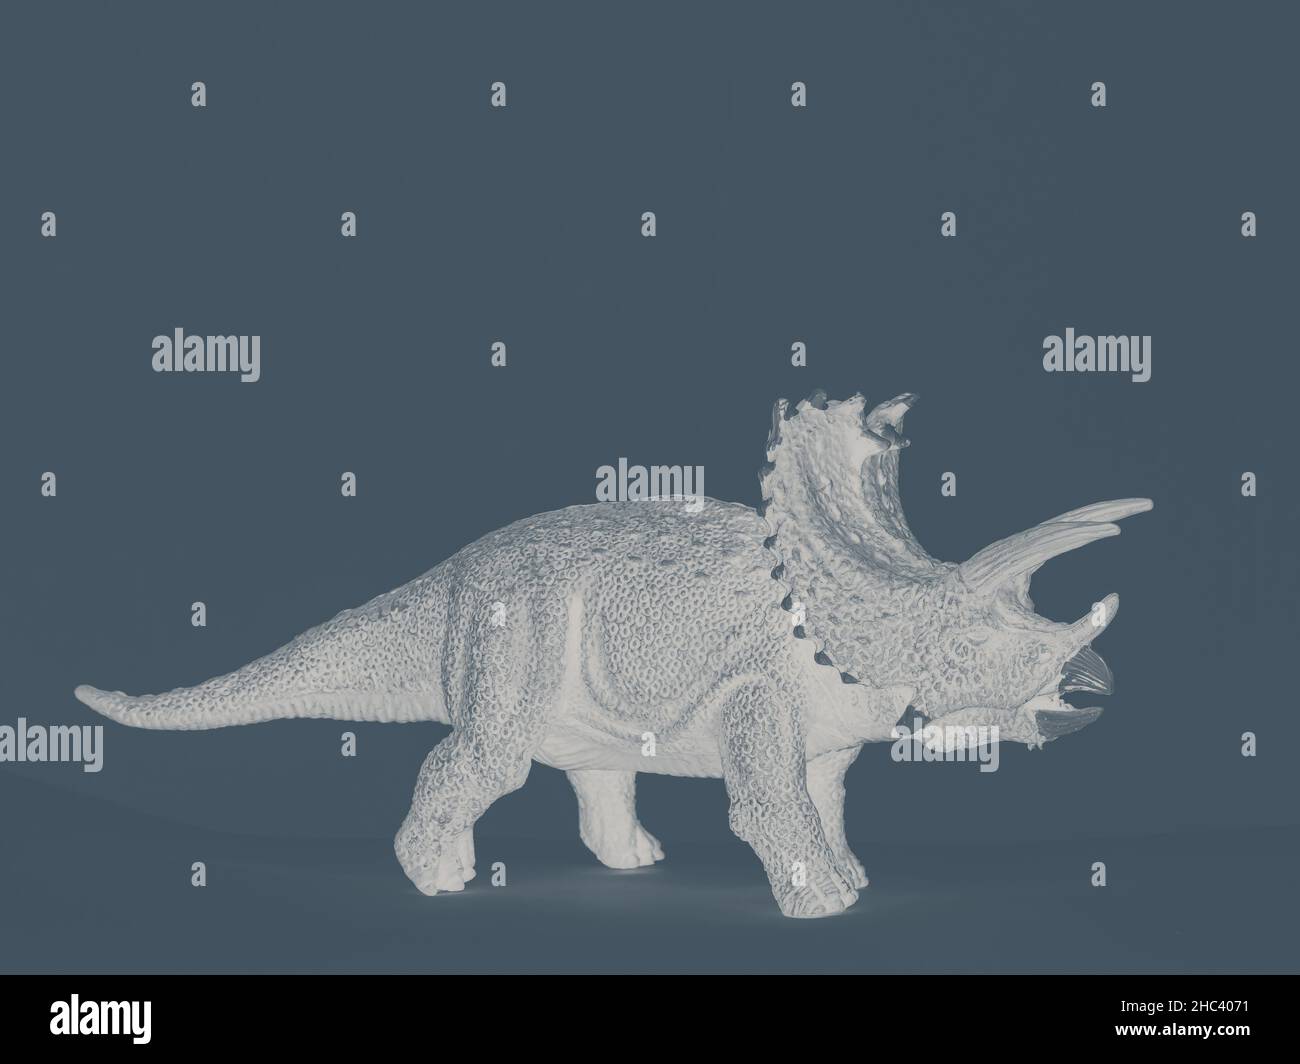 immagine stilizzata di un dinosauro giocattolo Foto Stock